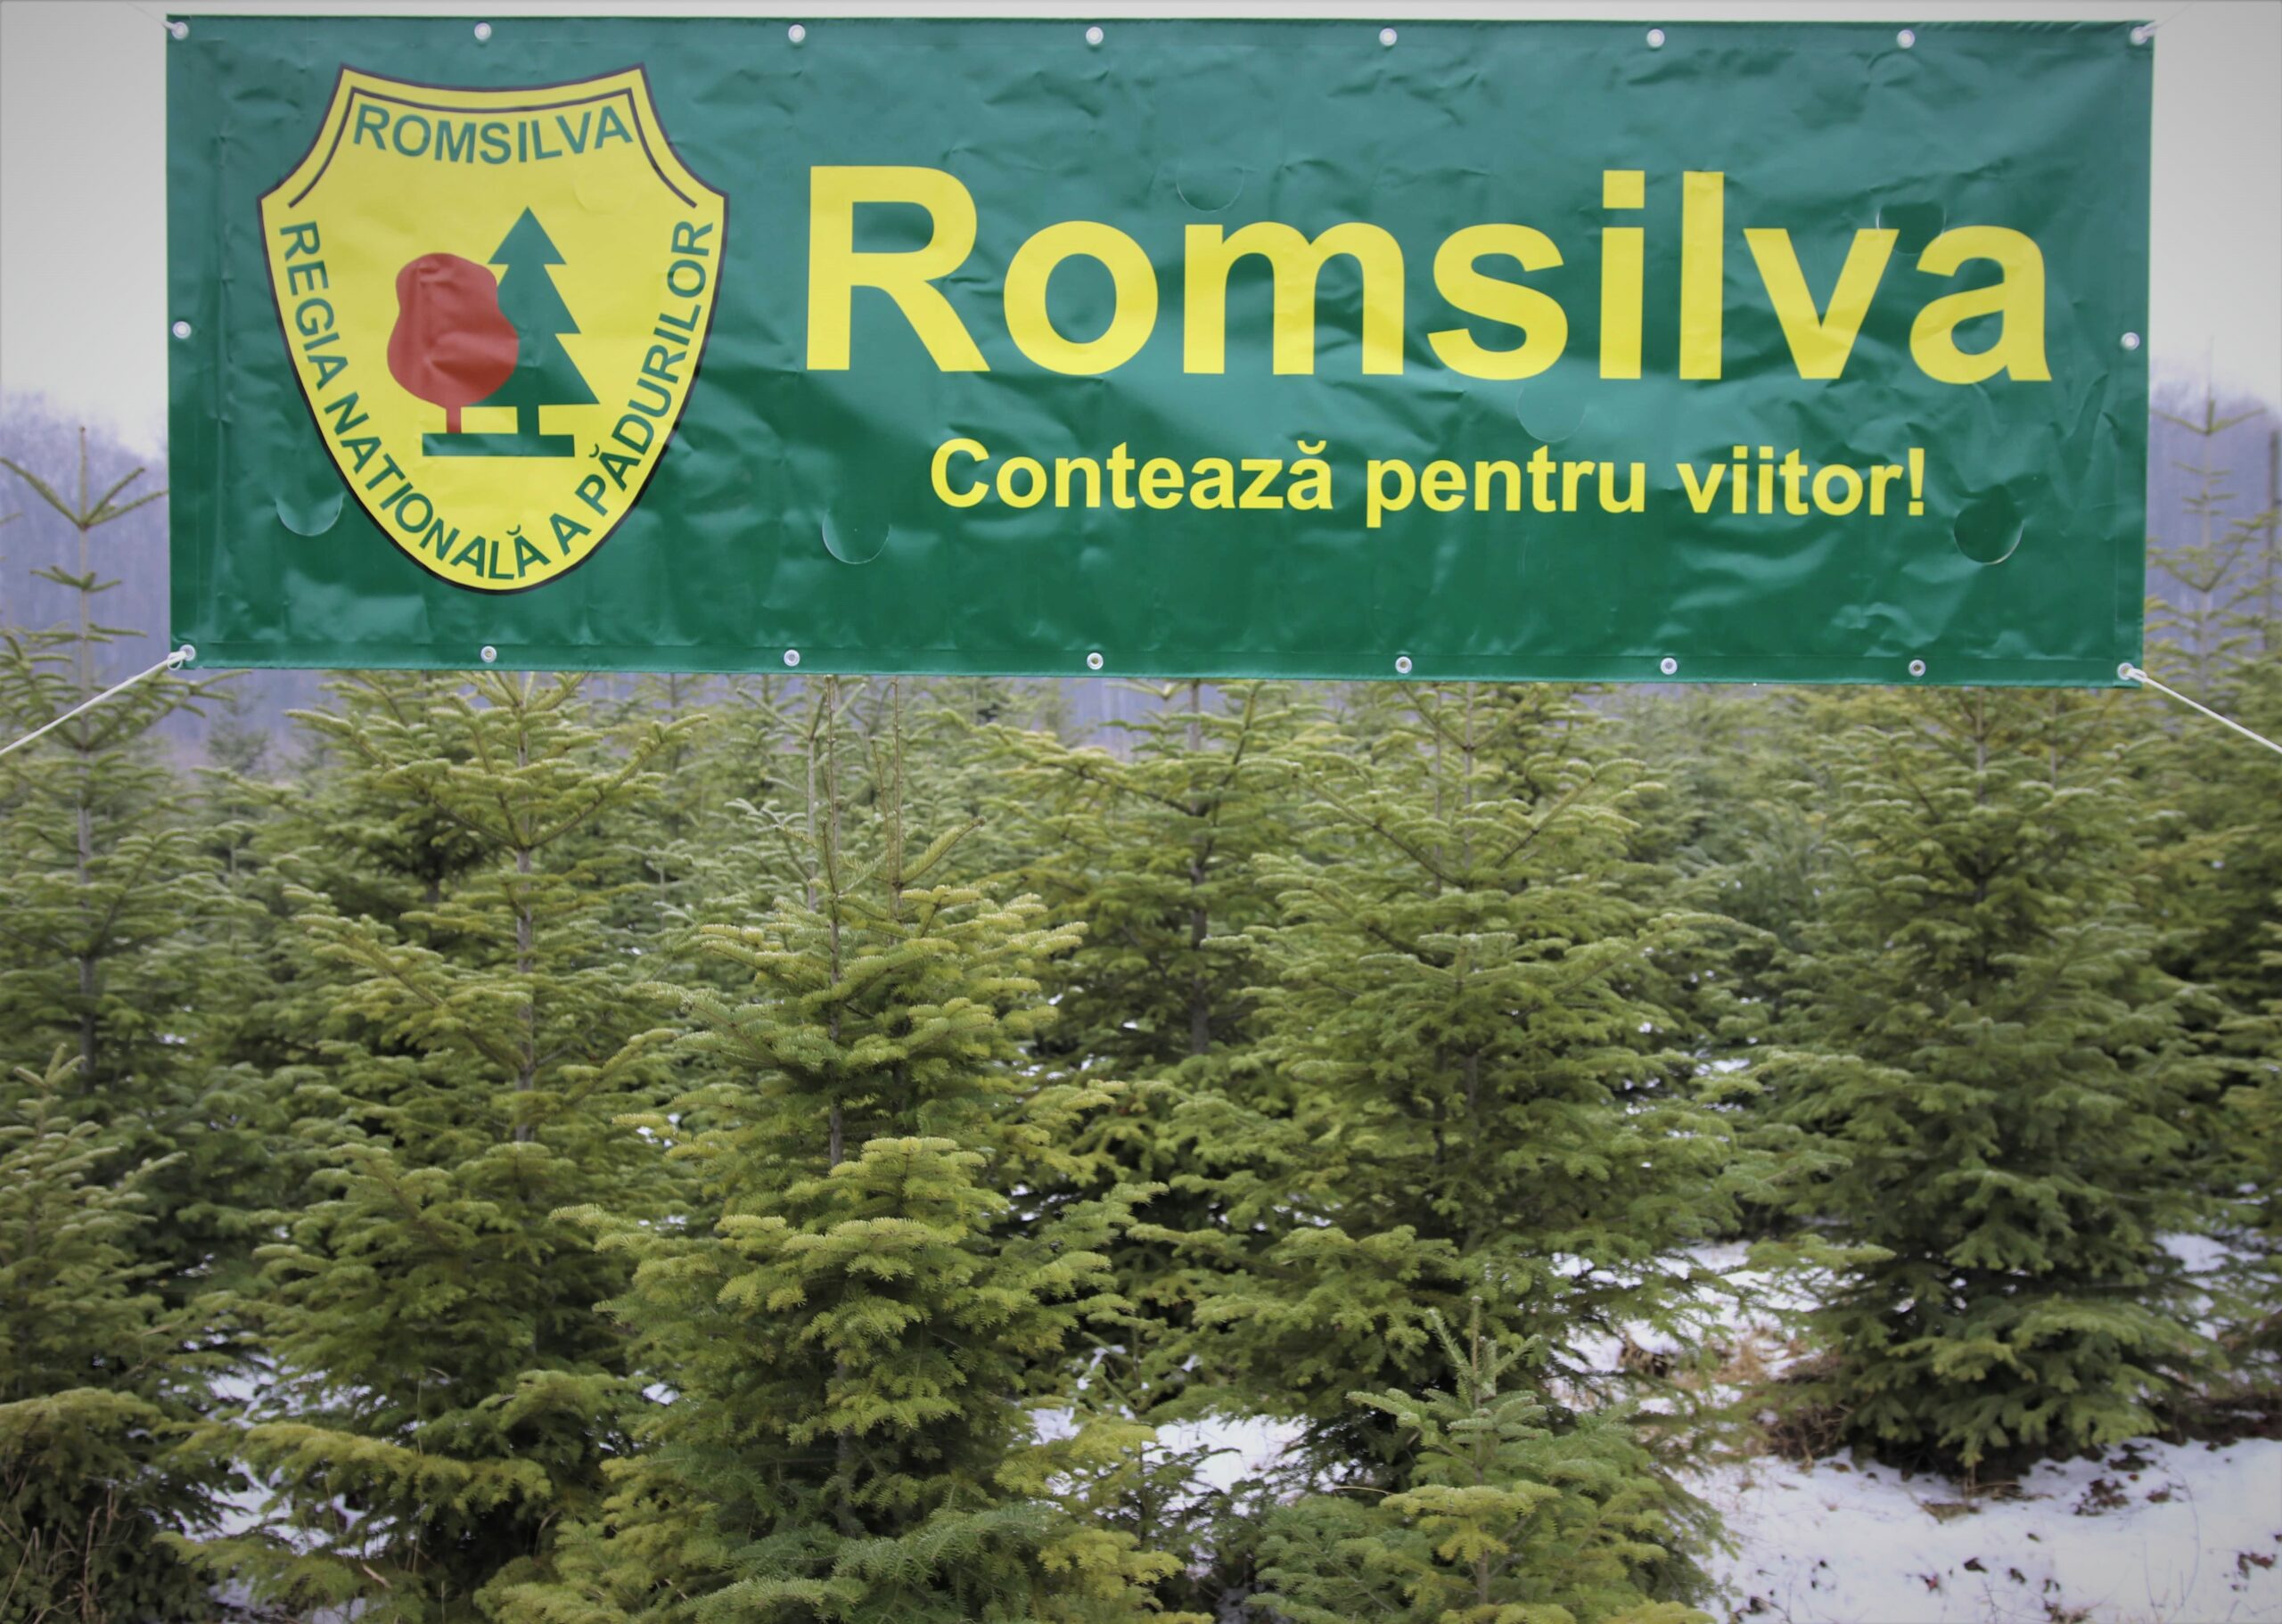 ROMSILVA – Romsilva oferă spre vânzare peste 30 de mii de pomi de Crăciun în sezonul sărbătorilor de iarnă. Direcția Silvică Sibiu nu comercializează pomi de Crăciun, nici la sediile ocoalelor silvice, nici în alte pucte de desfacere.